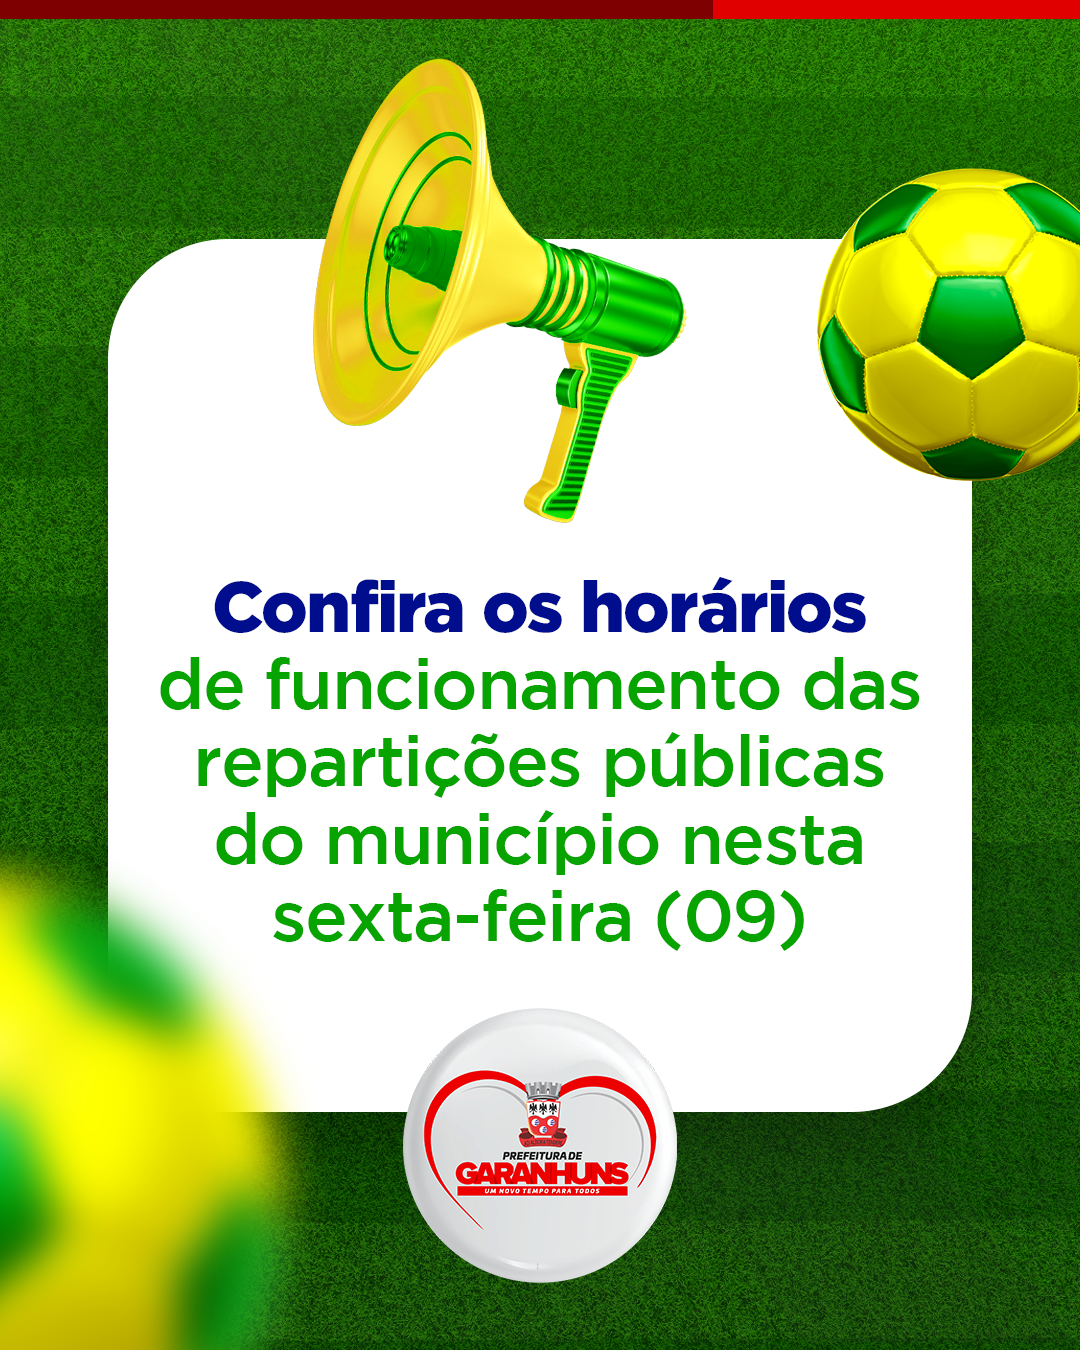 Amanhã (24) tem jogo do Brasil e as repartições públicas funcionam em  horário especial - Prefeitura de Ibitinga